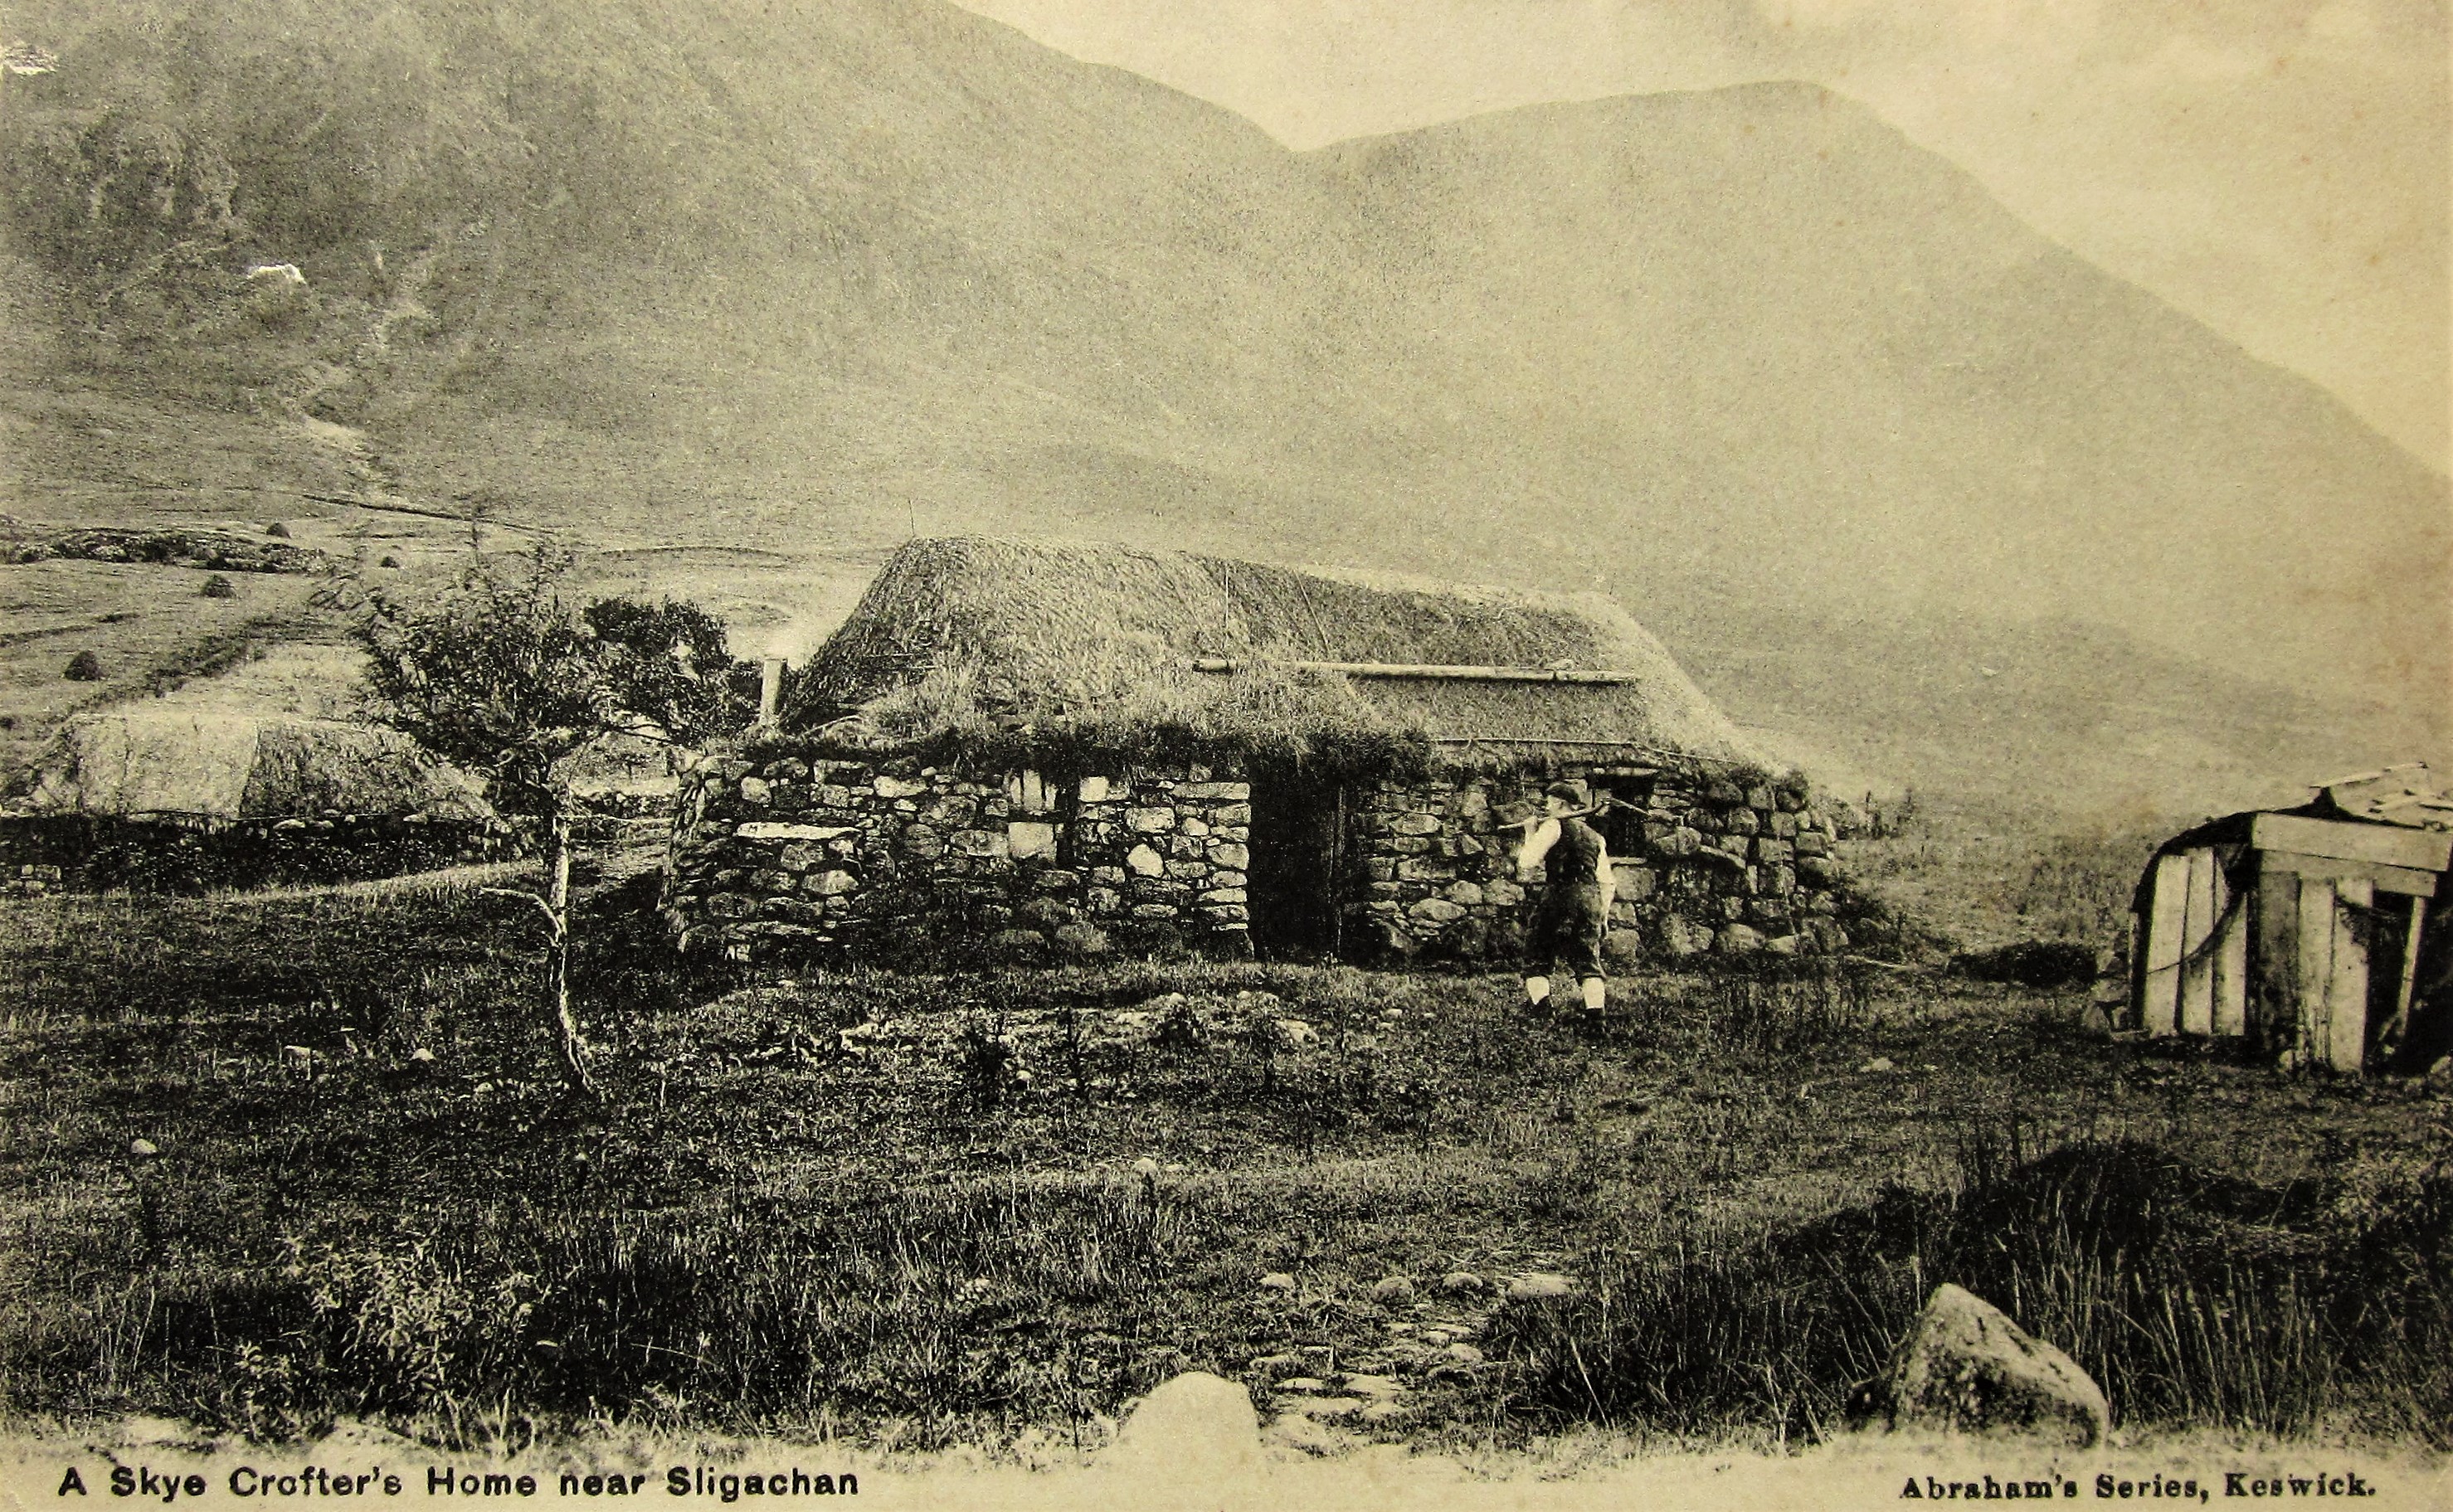 A Skye Crofter's Home near Sligachan.